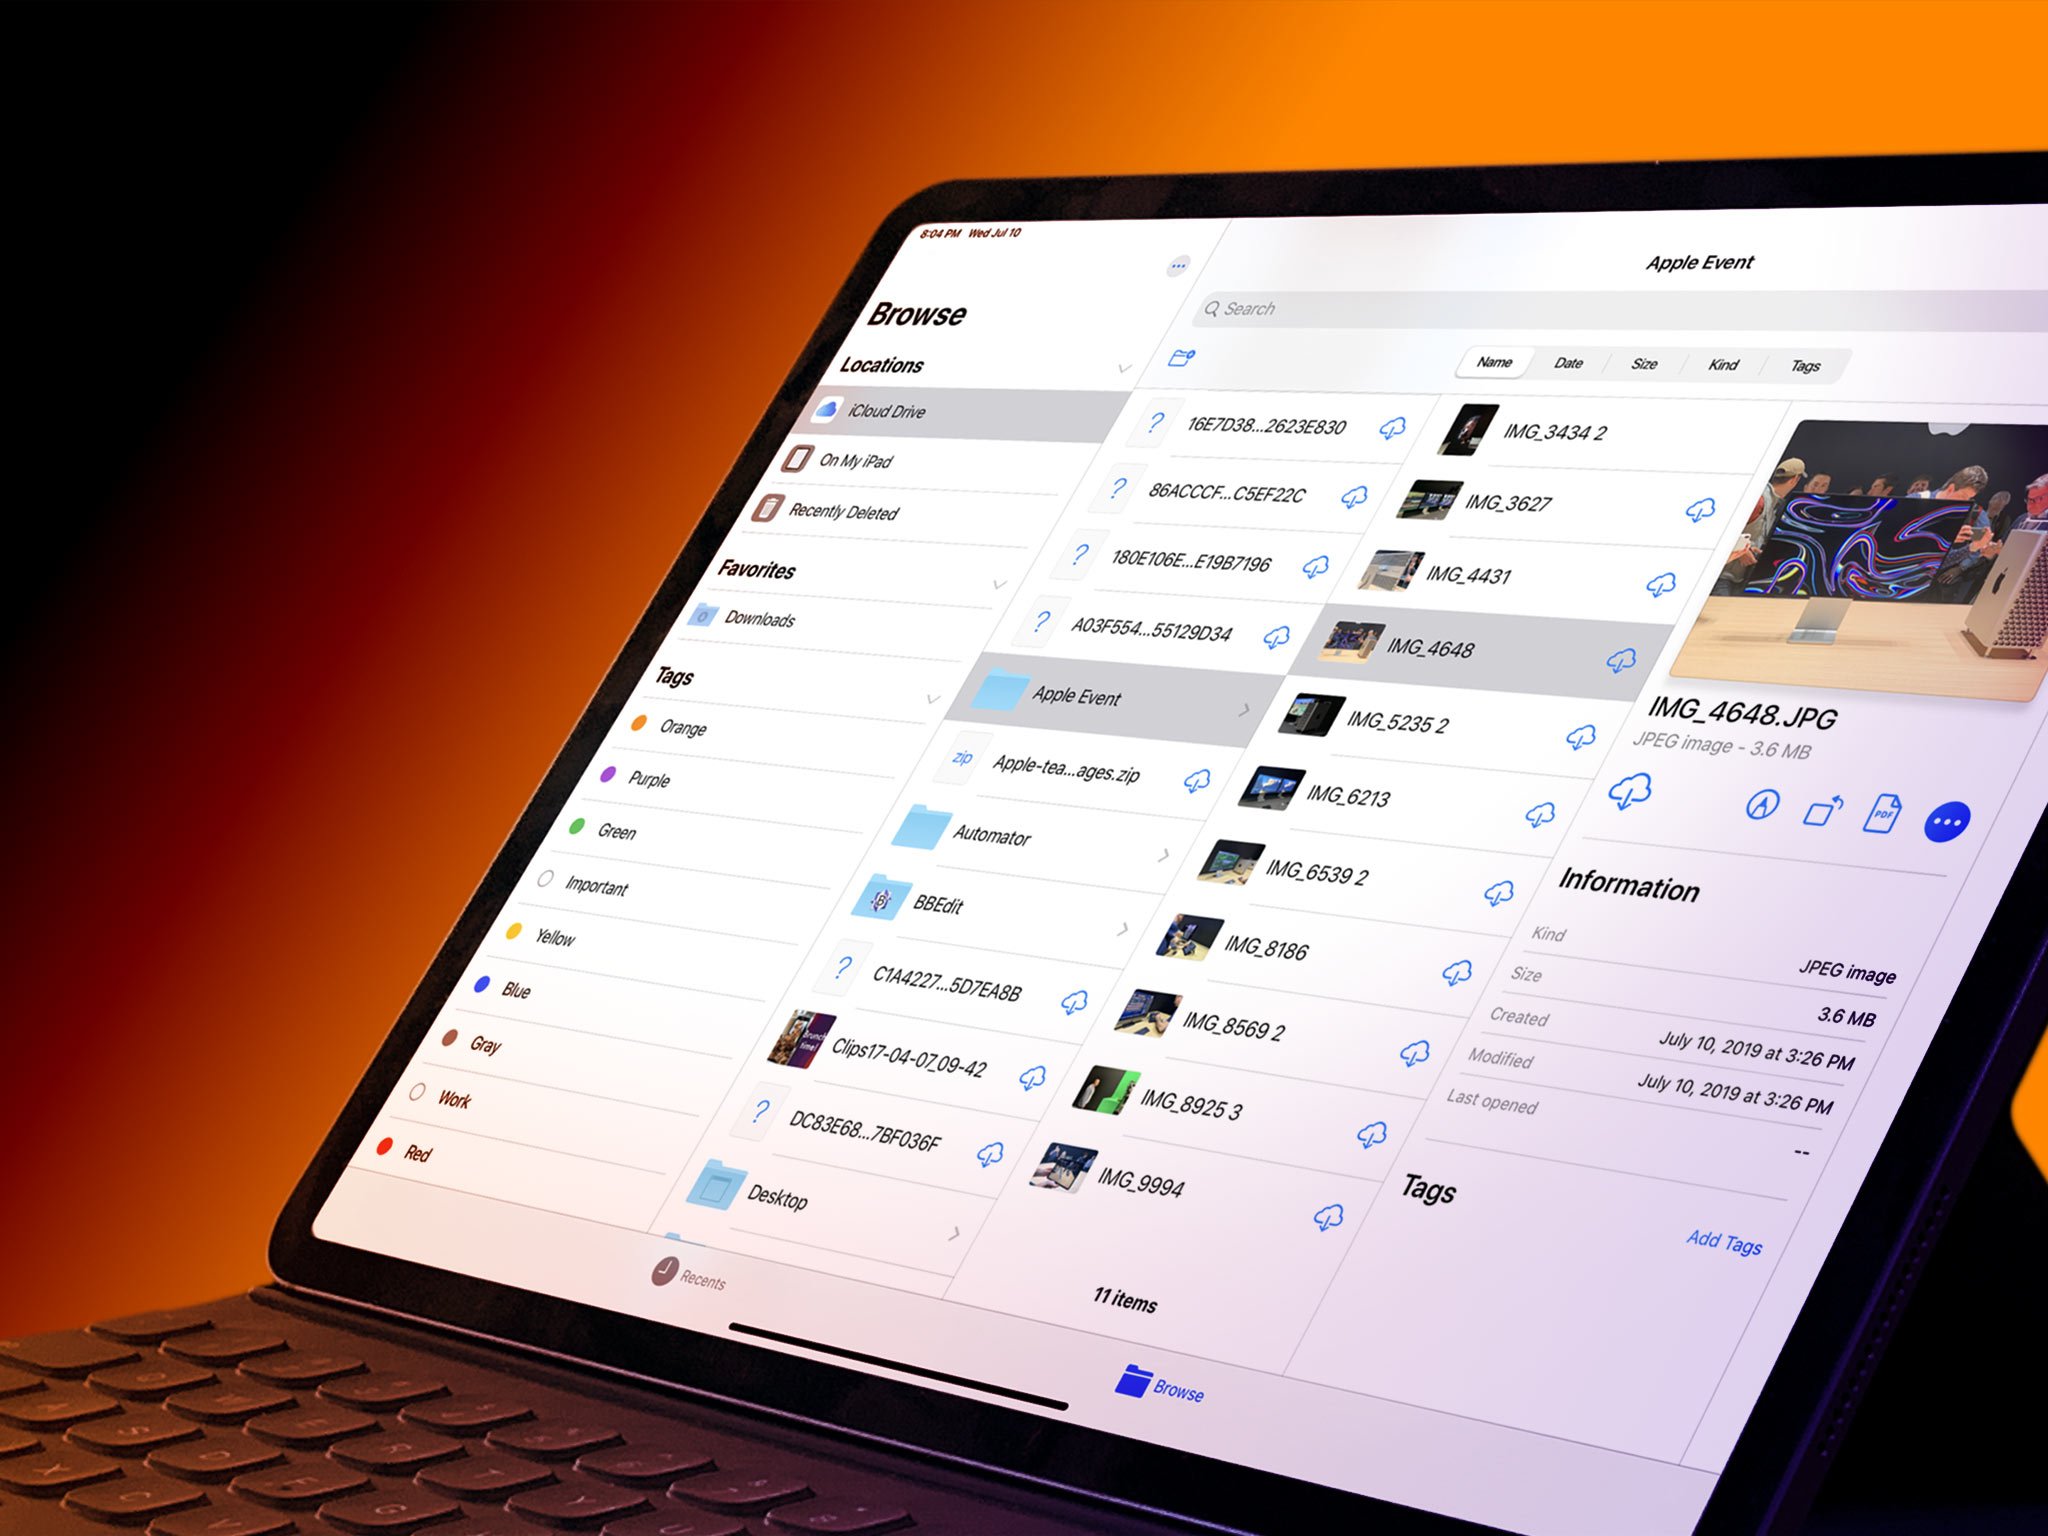 iPadOS Files app